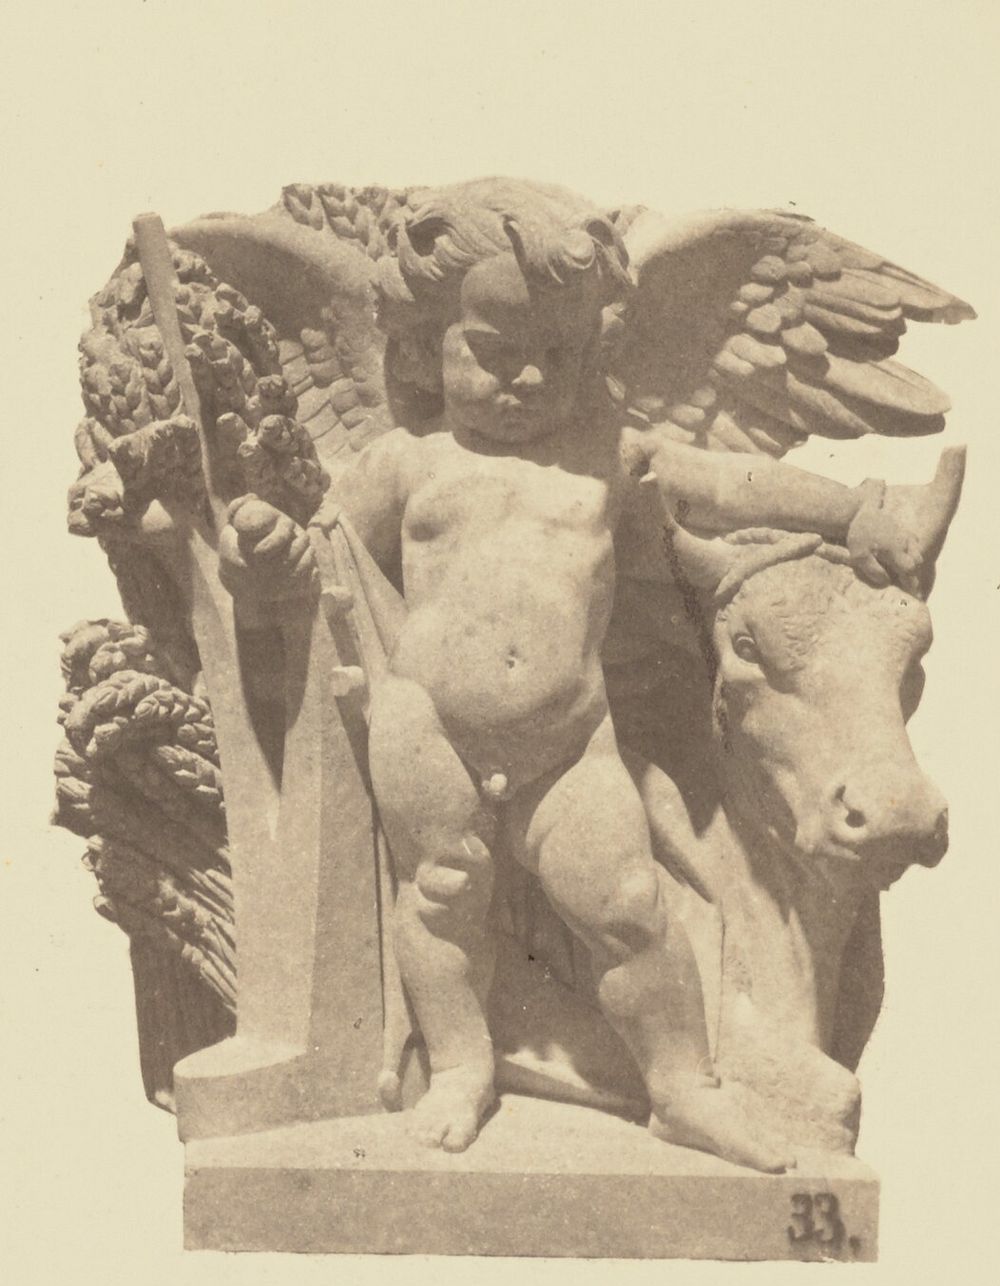 "L'Agriculture", Sculpture by Armand Blanc, Decoration of the Louvre, Paris by Édouard Baldus